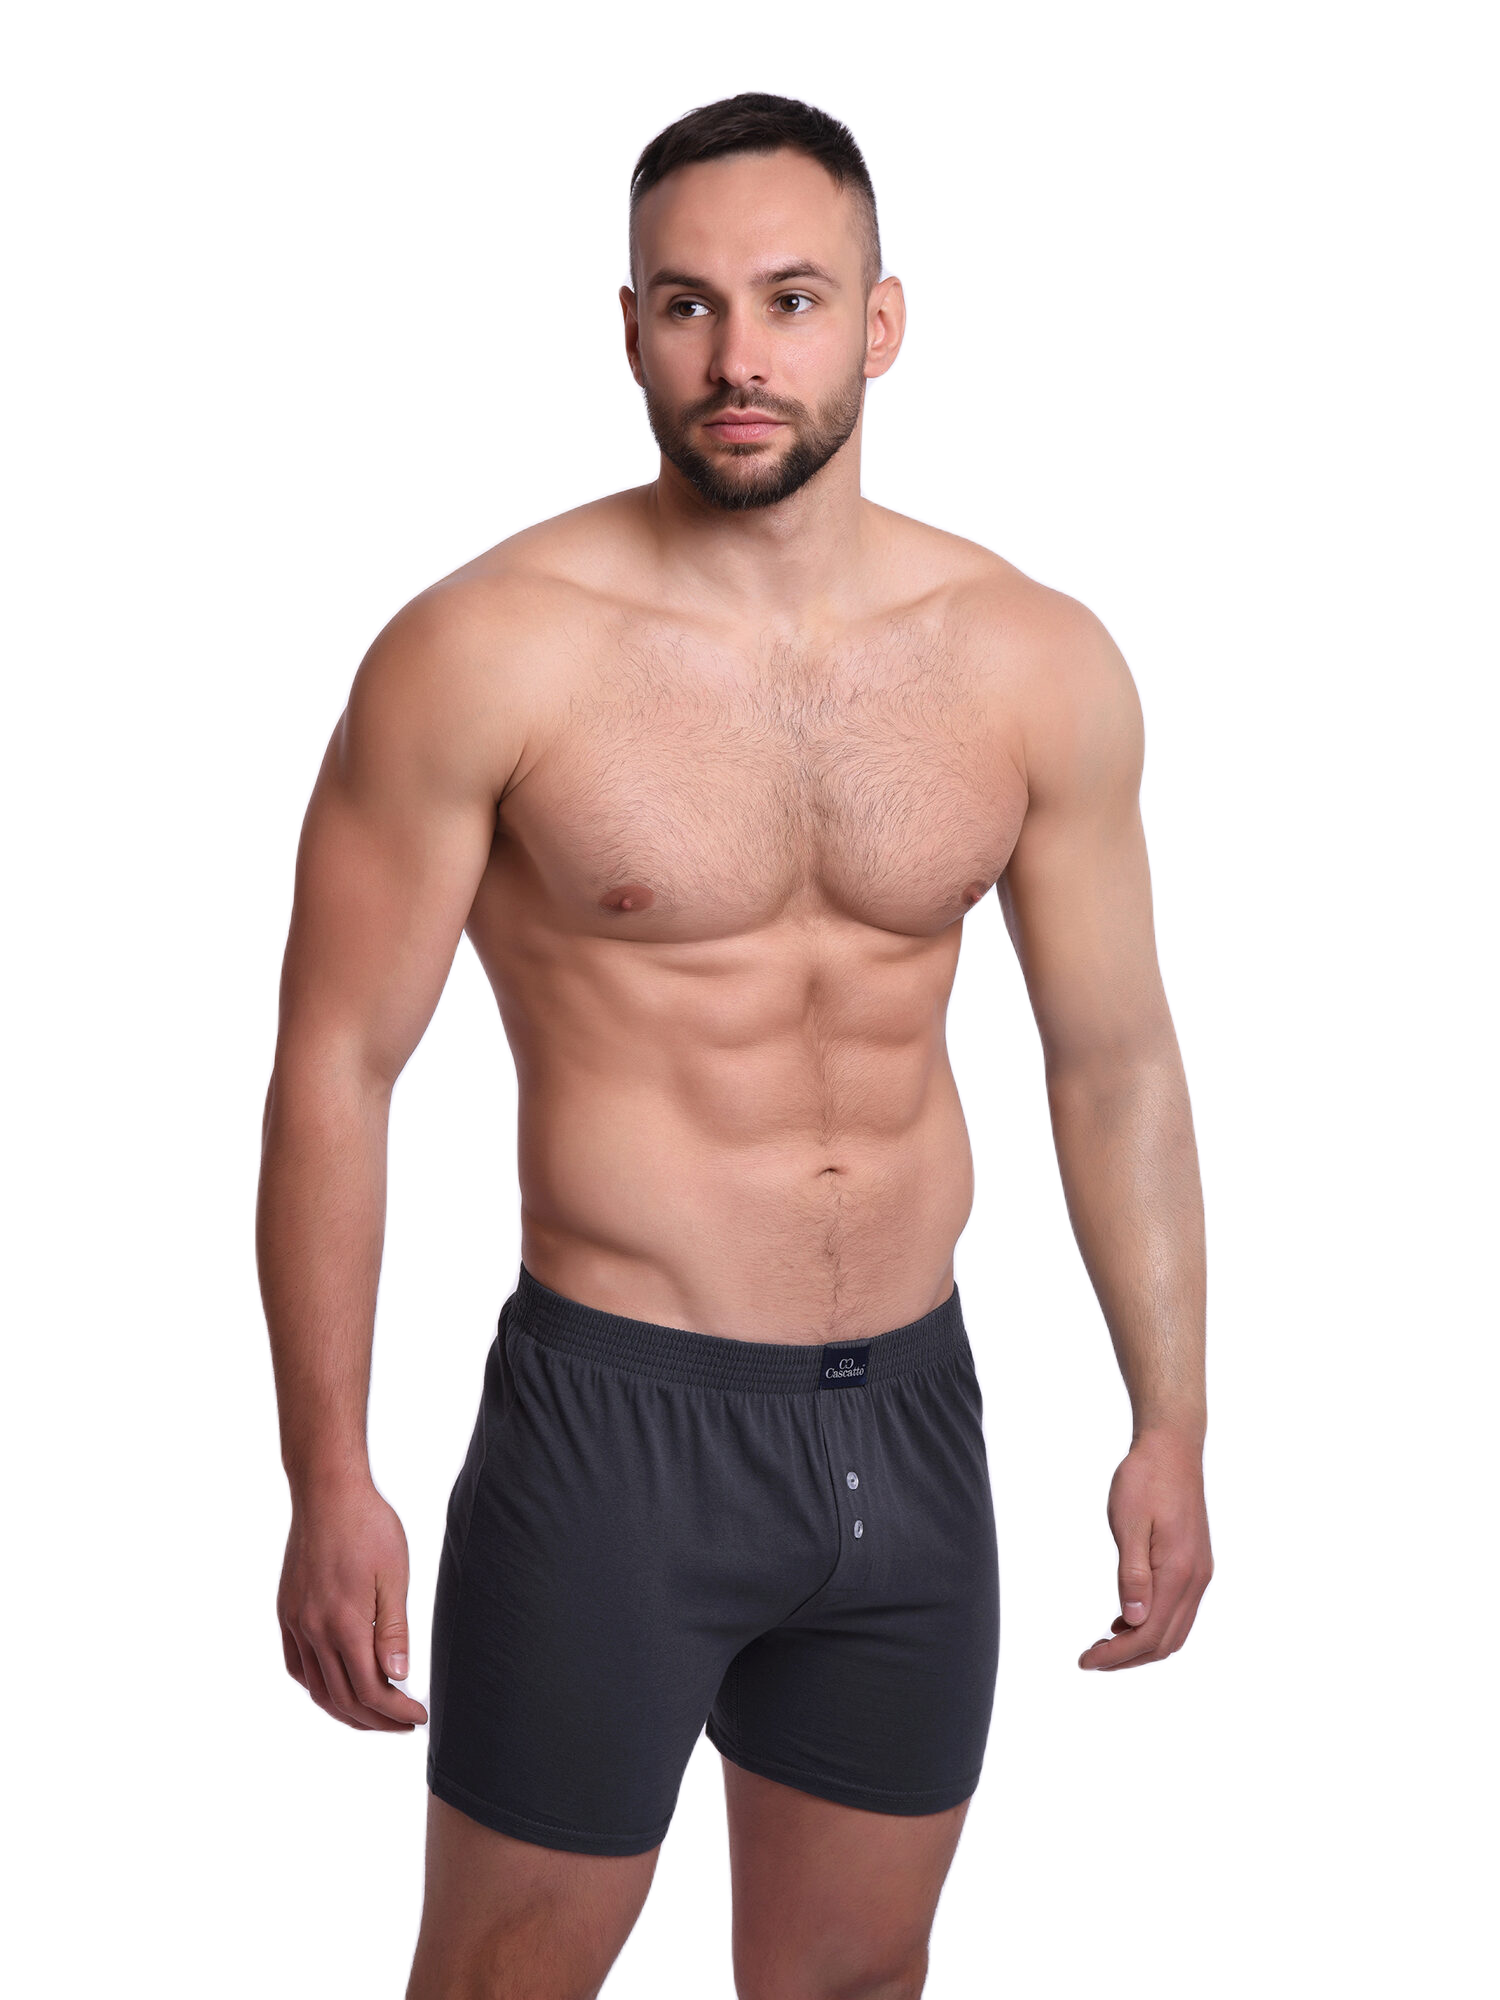 Трусы Cascatto шорты для мужчин, тёмно-серый, размер 3XL, MSH1803